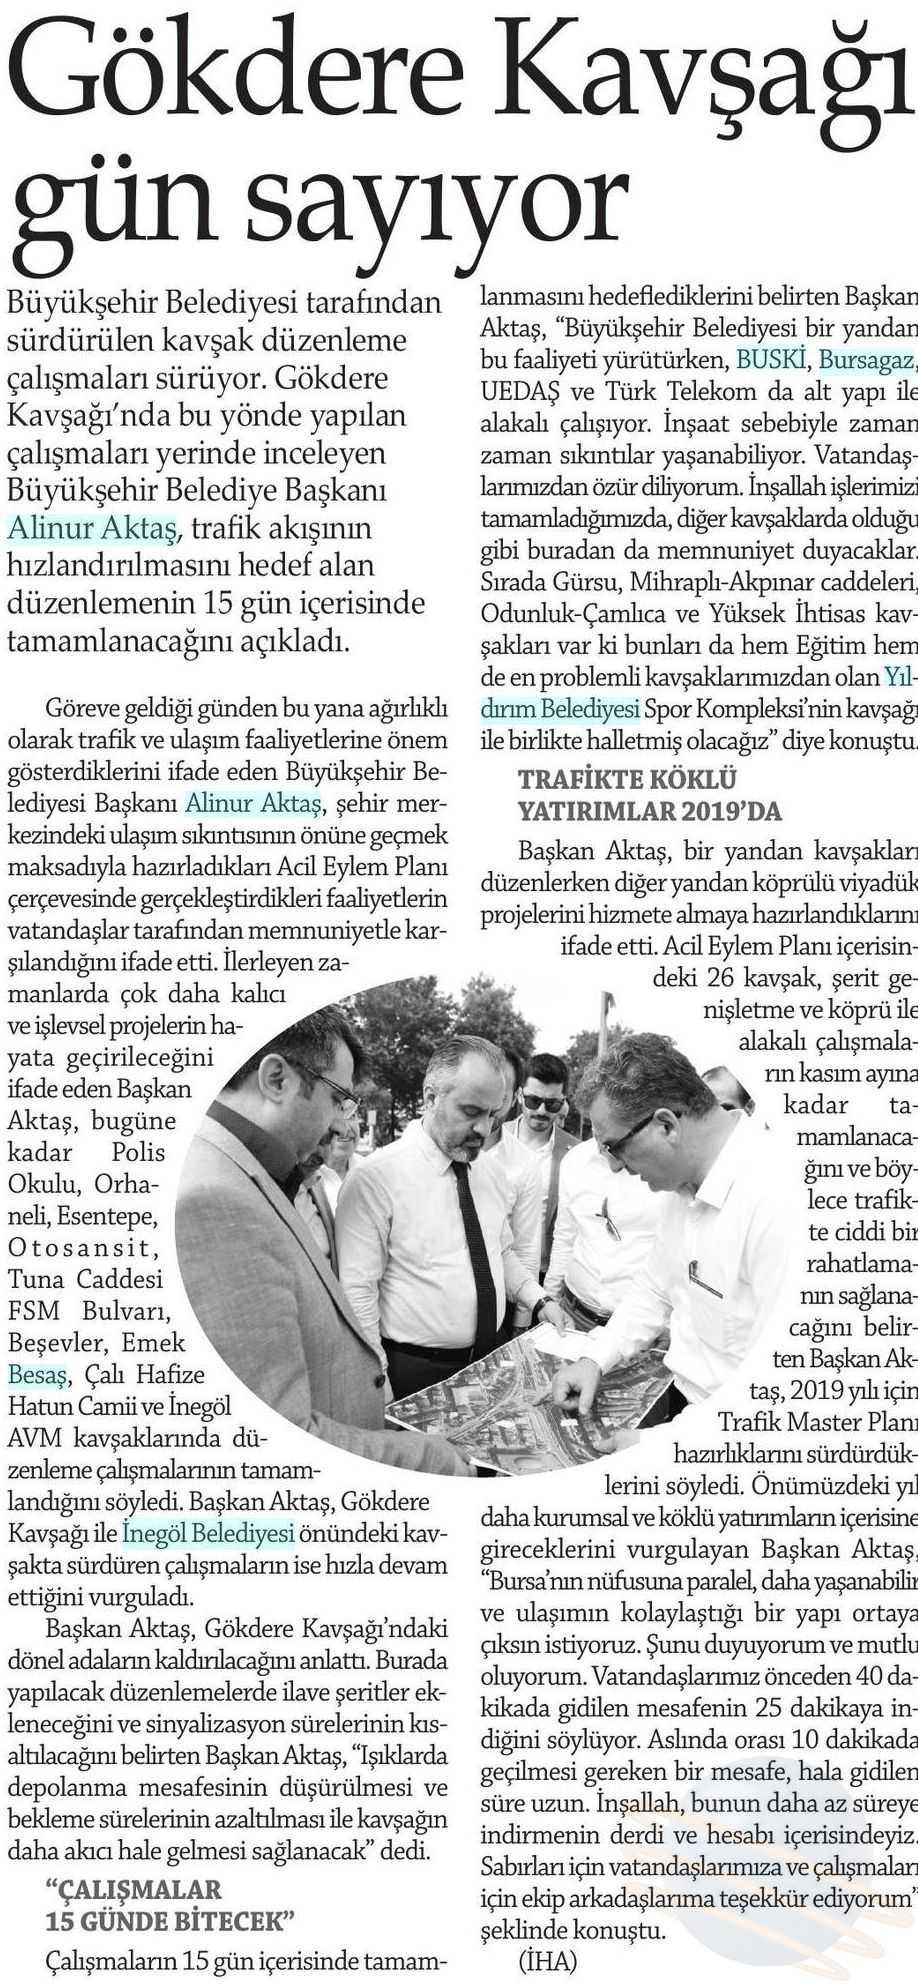 GÖKDERE KAVSAGI GÜN SAYIYOR Yayın Adı : Sehir Gazetesi (Bursa)